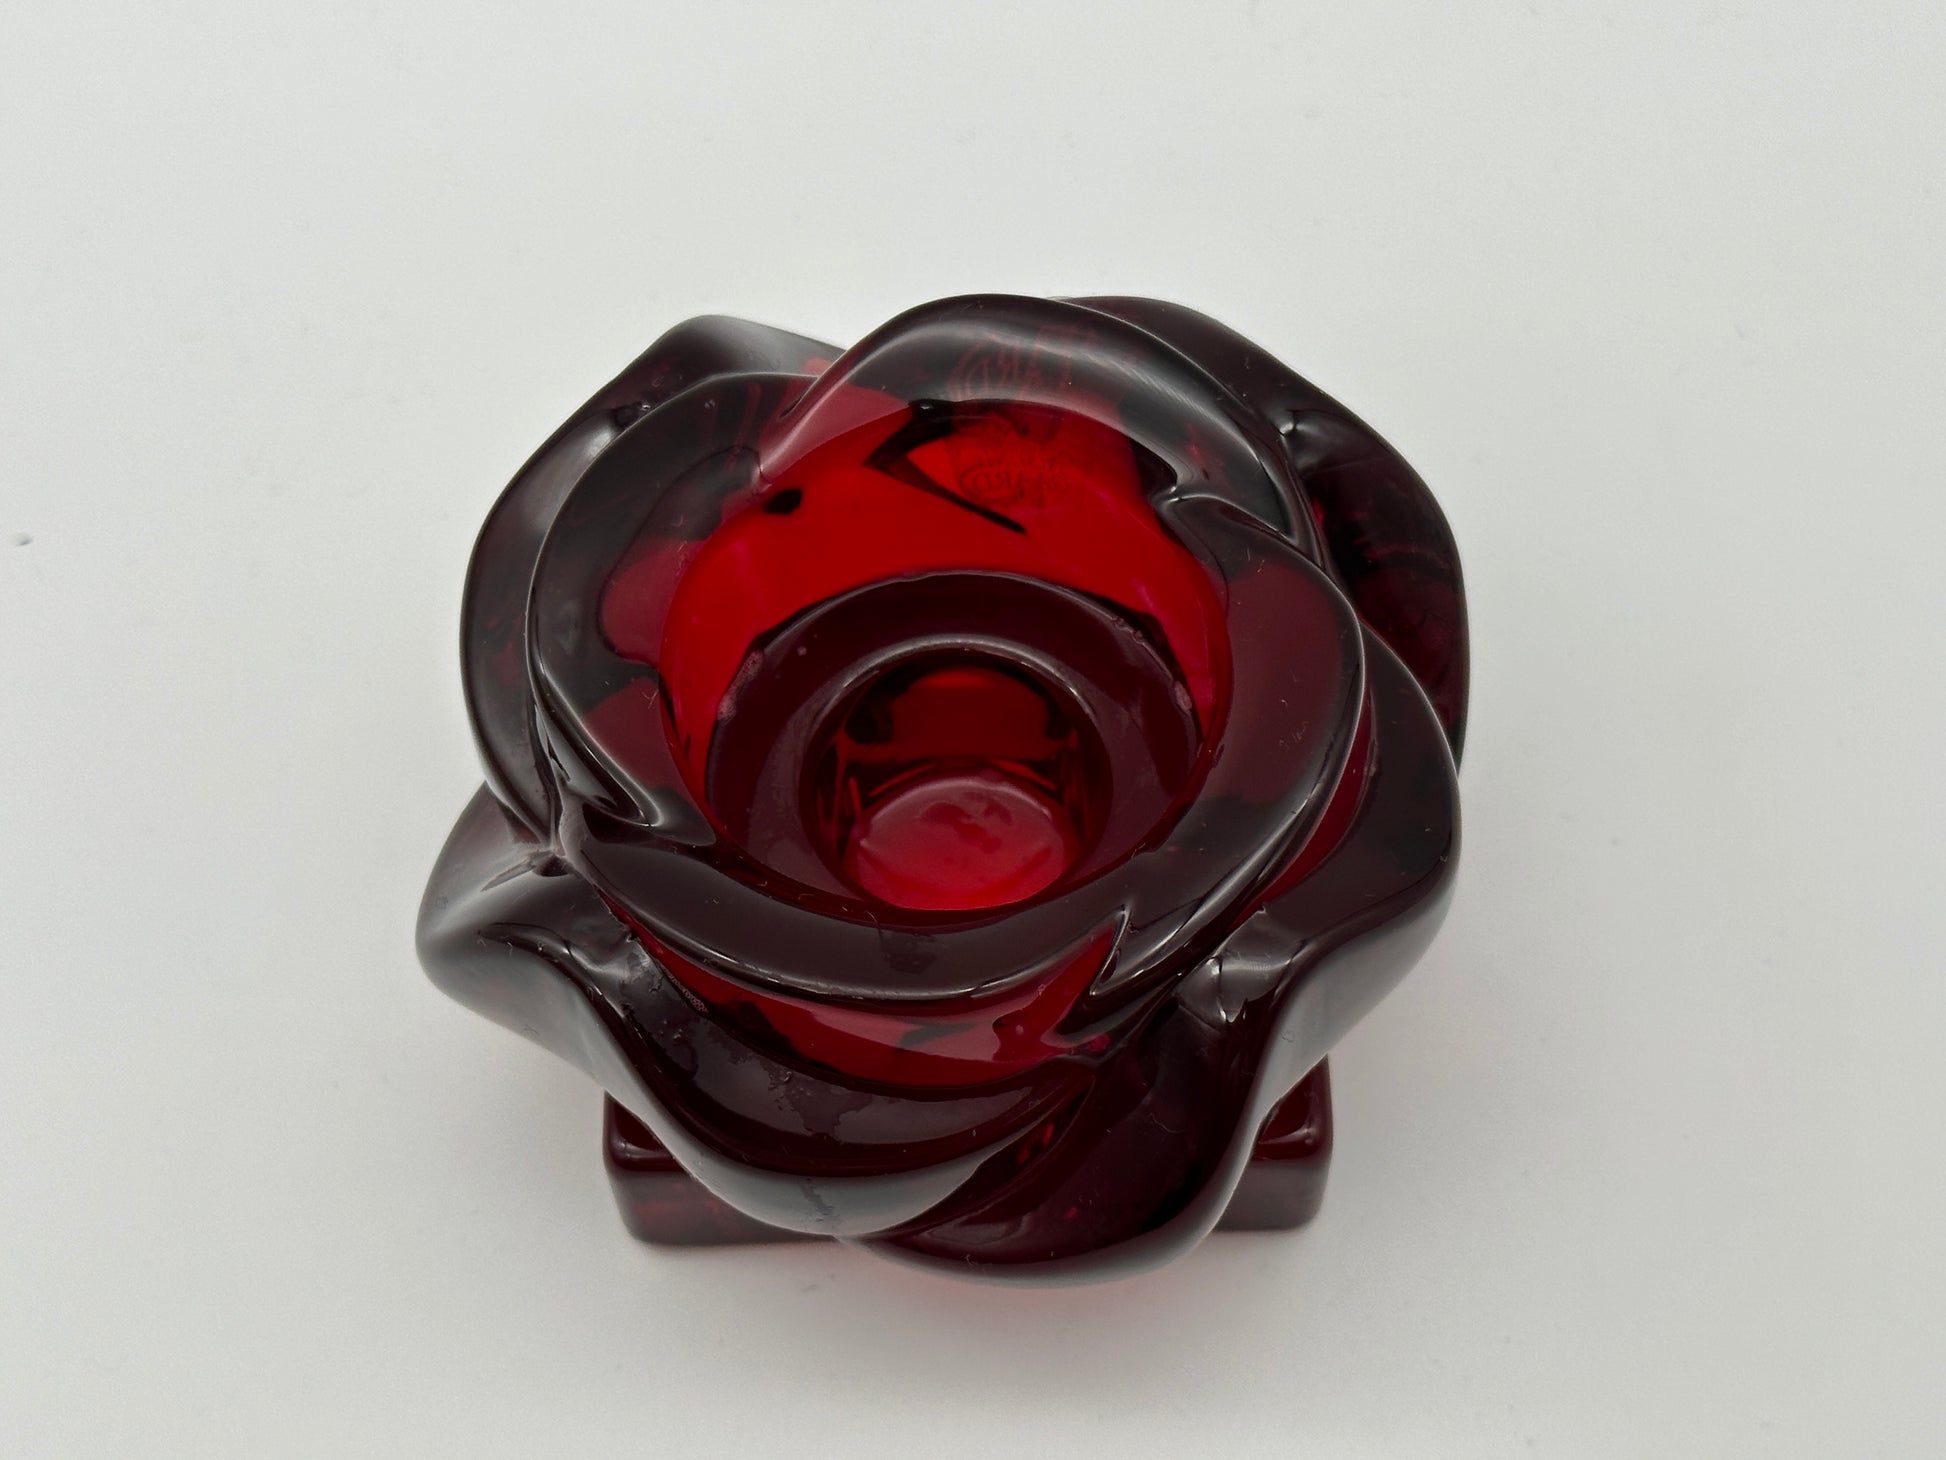 Holmegaard - Rose - candle holder. Scandinapan